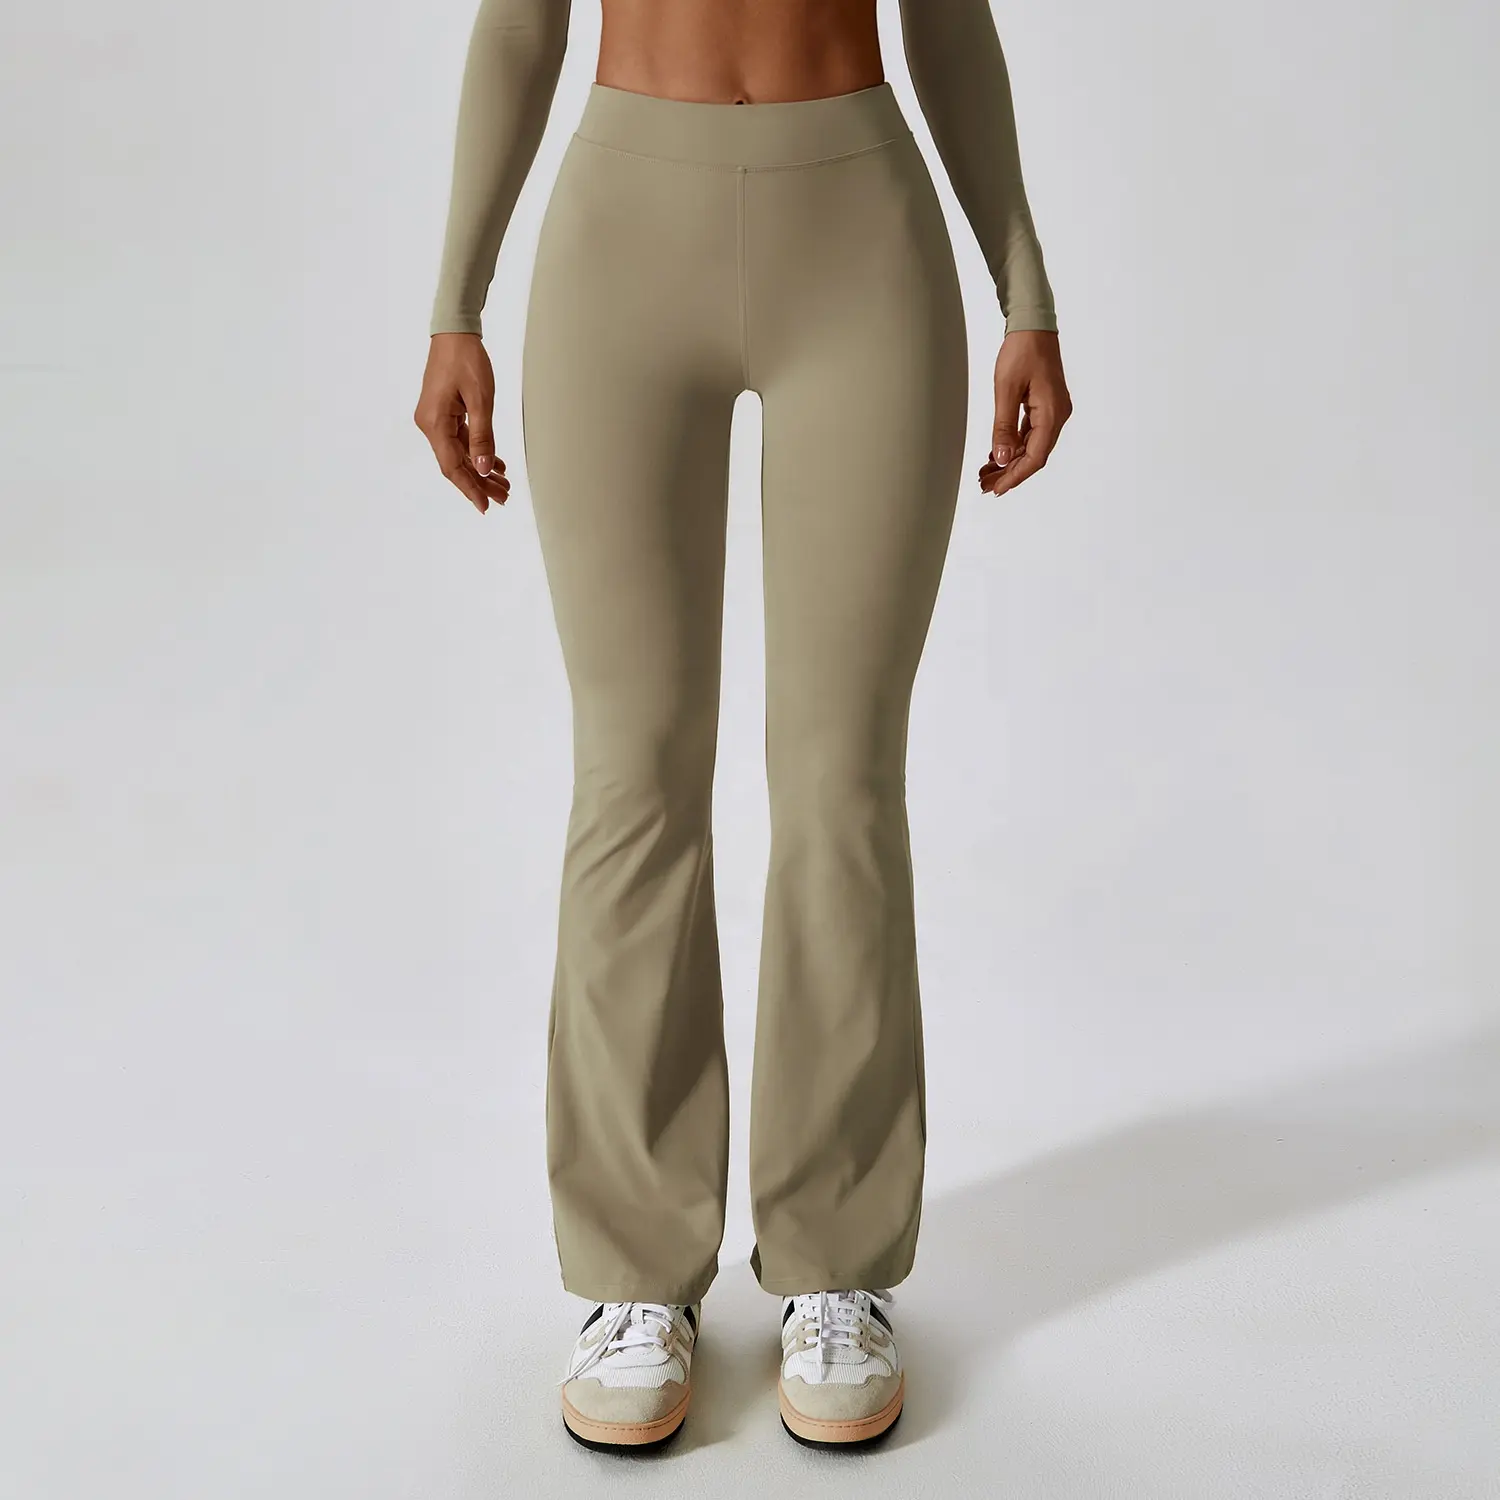 Pantaloni a zampa di Yoga leggeri morbidi elasticizzati morbidi ad asciugatura rapida da donna